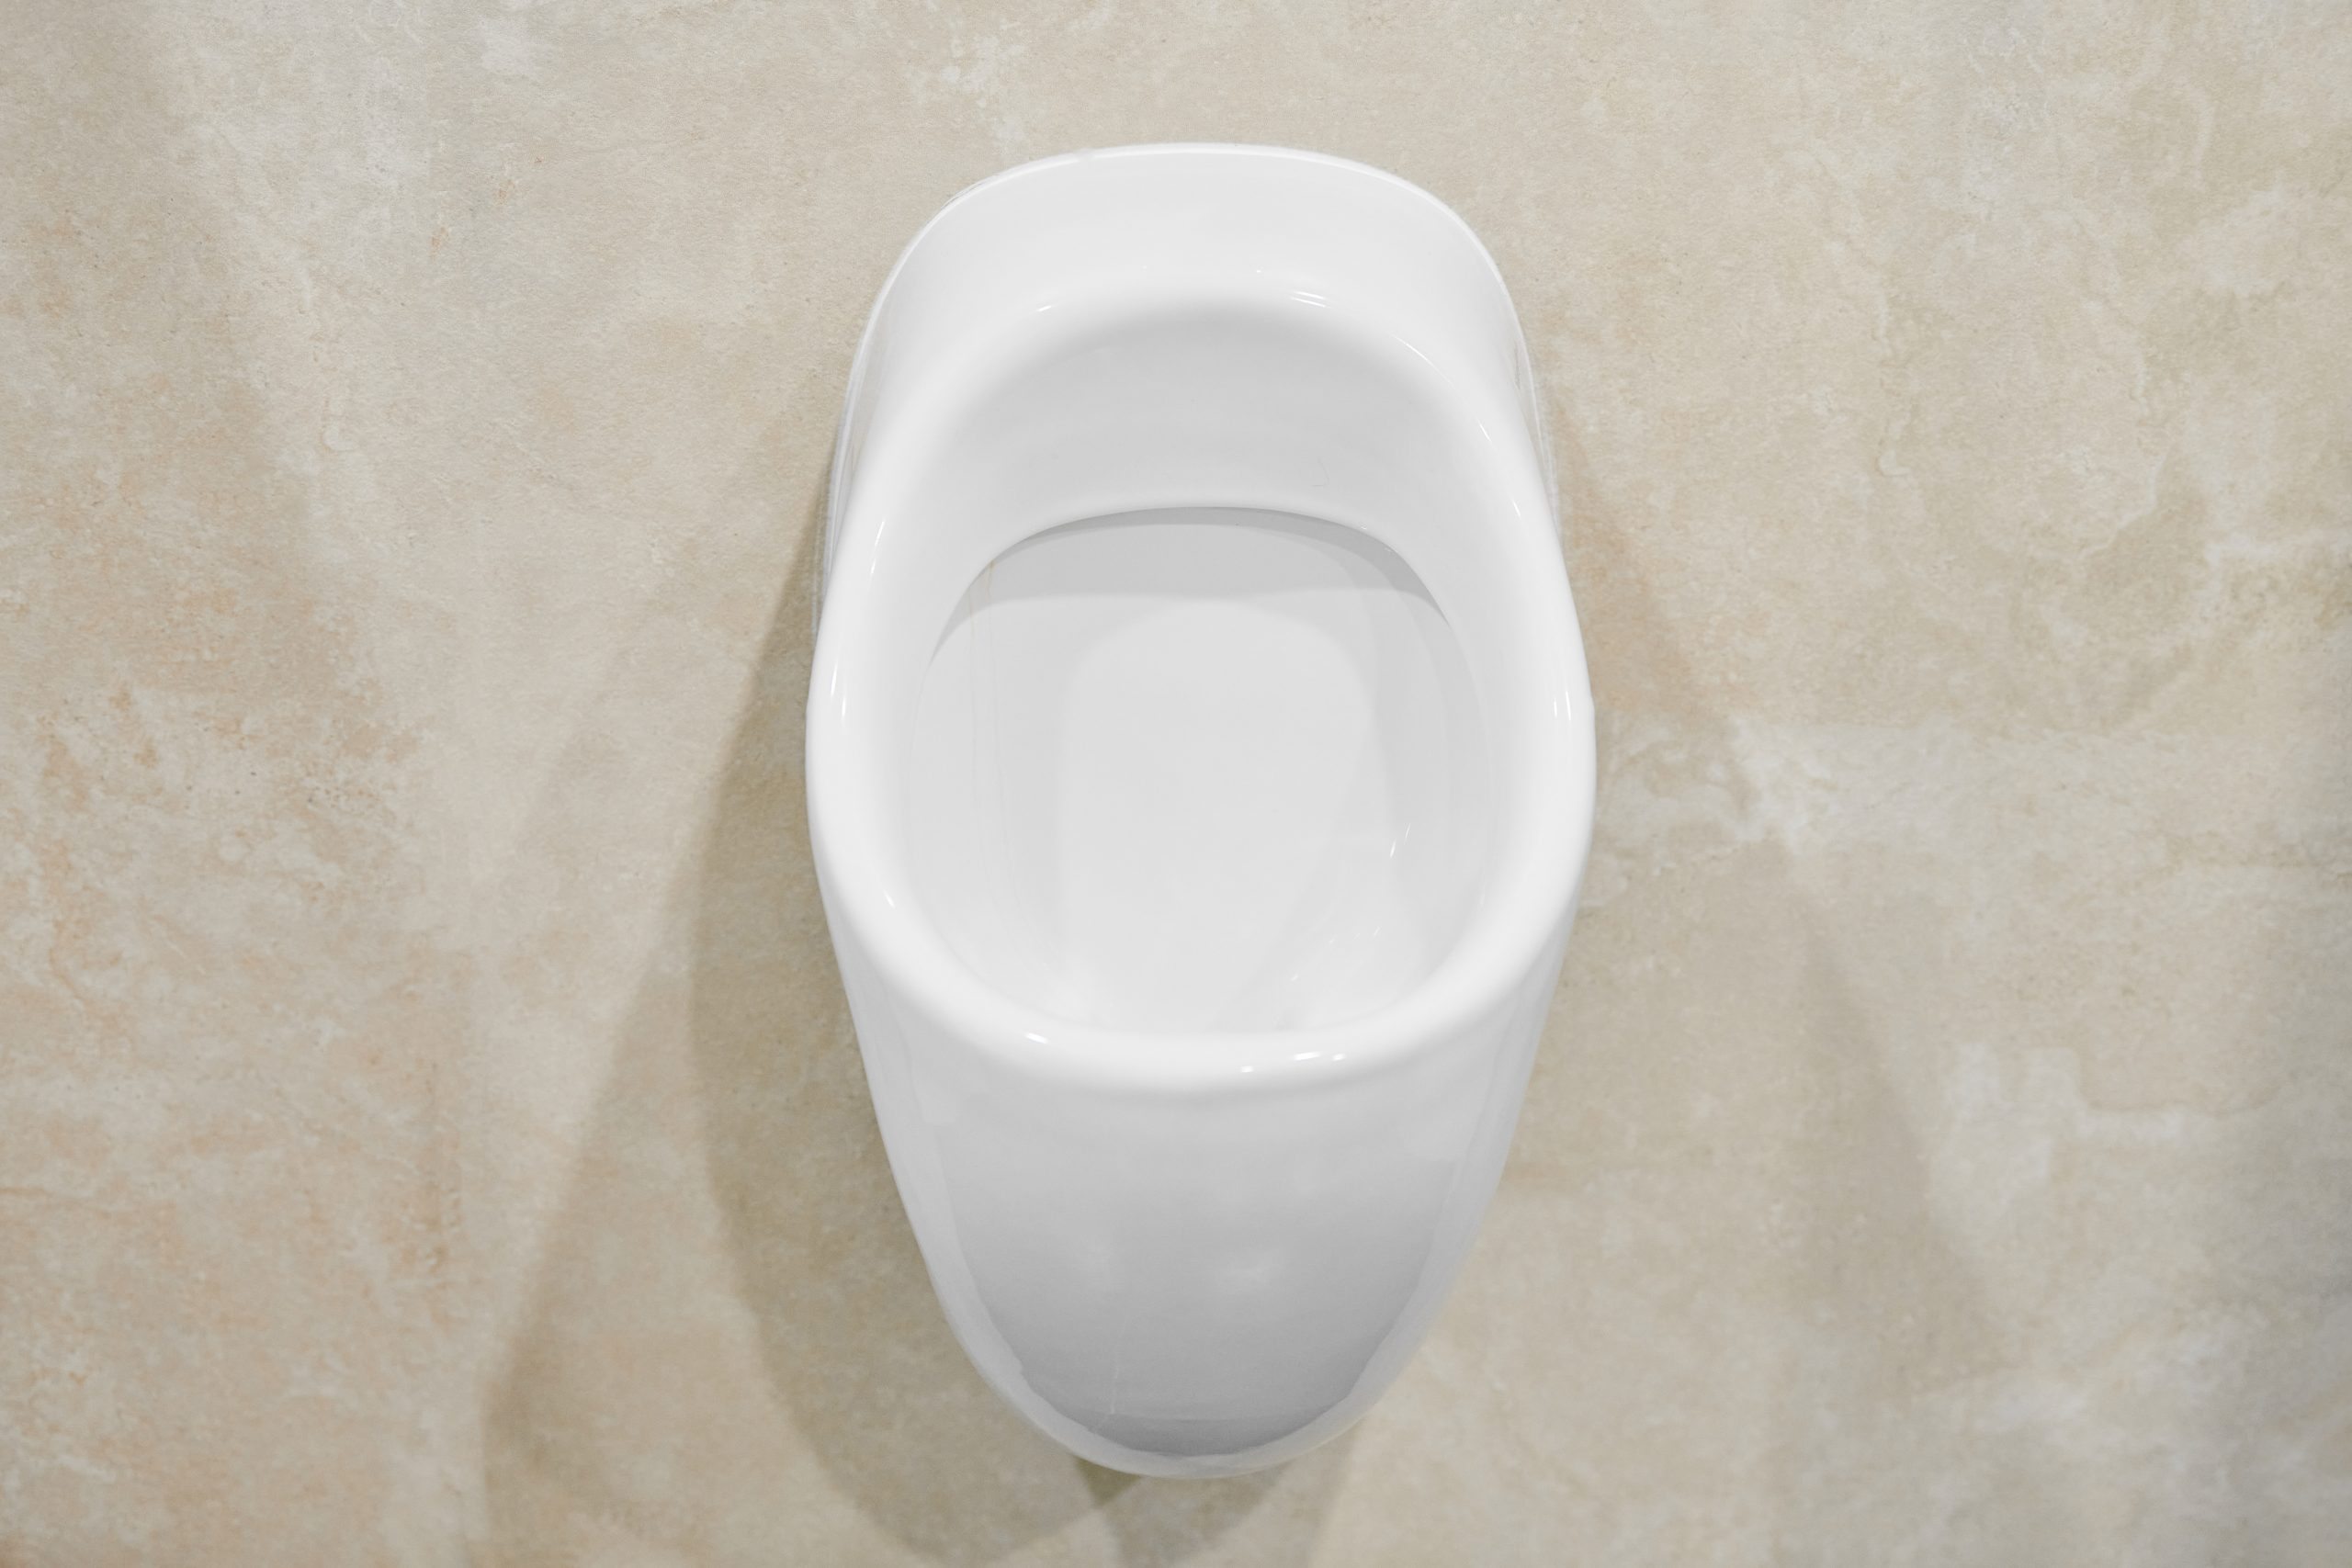 Urinarios que no usan agua ¿Cómo funcionan?